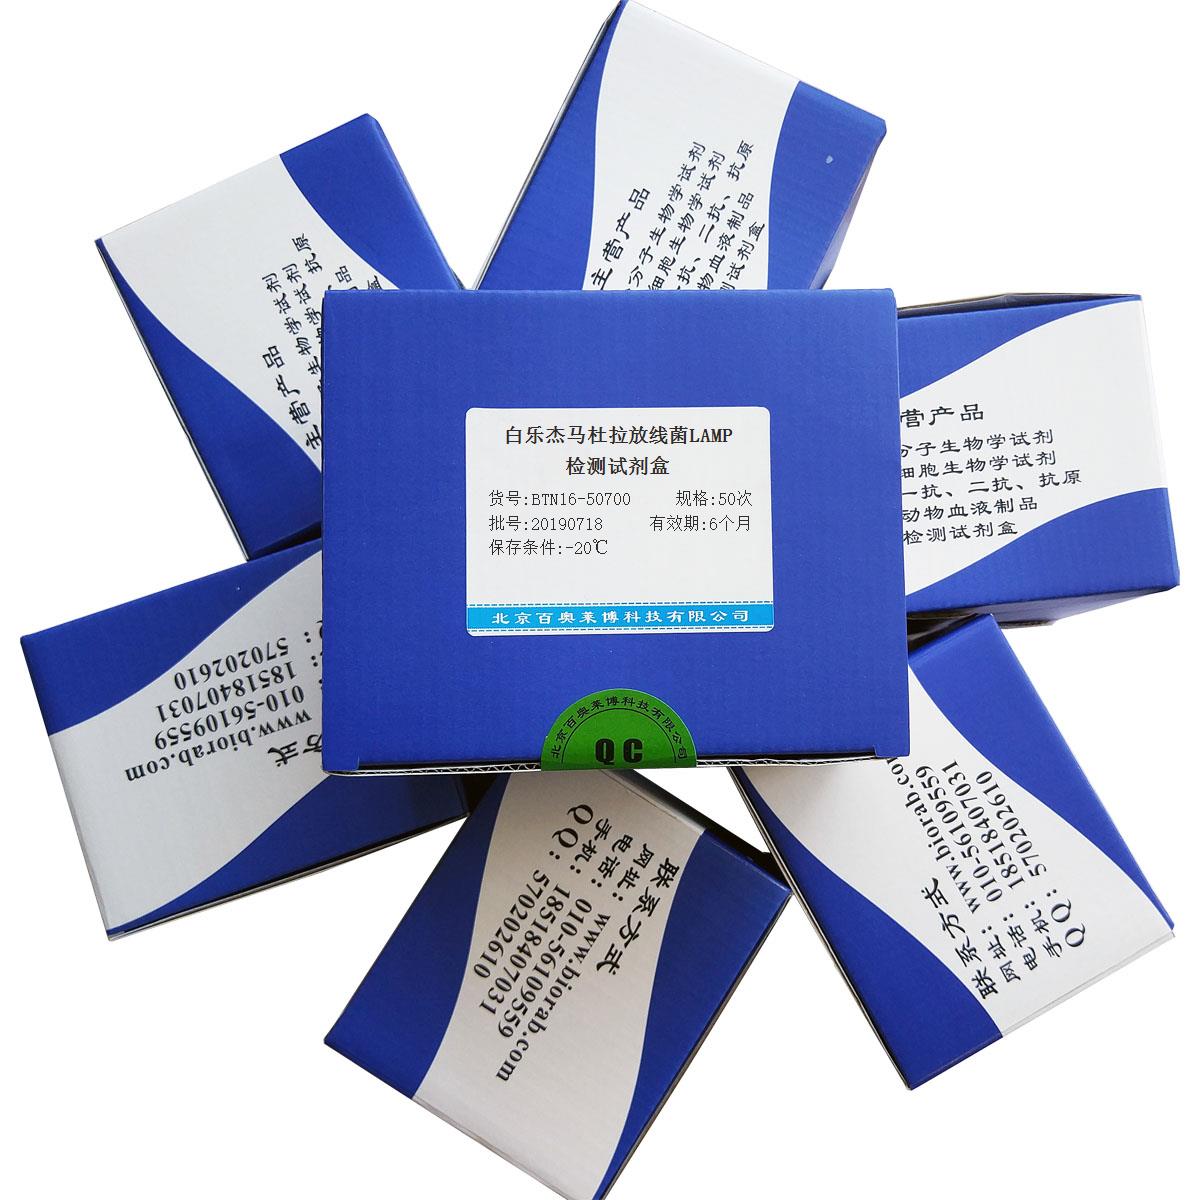 白乐杰马杜拉放线菌LAMP检测试剂盒优惠促销